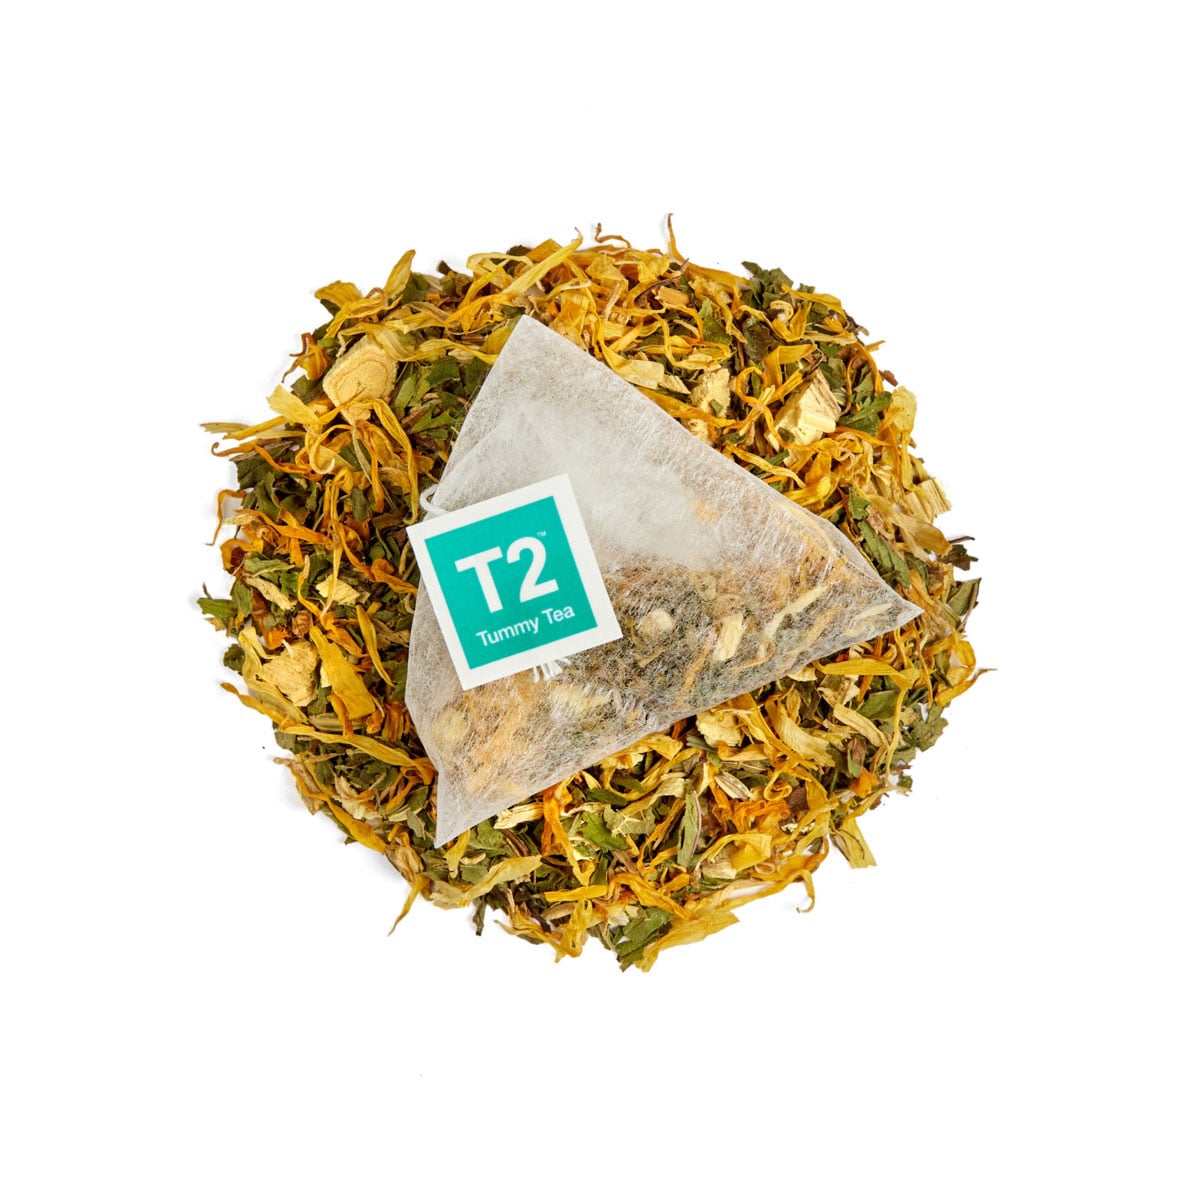 T2 Tummy Tea Teabags 60 Pack